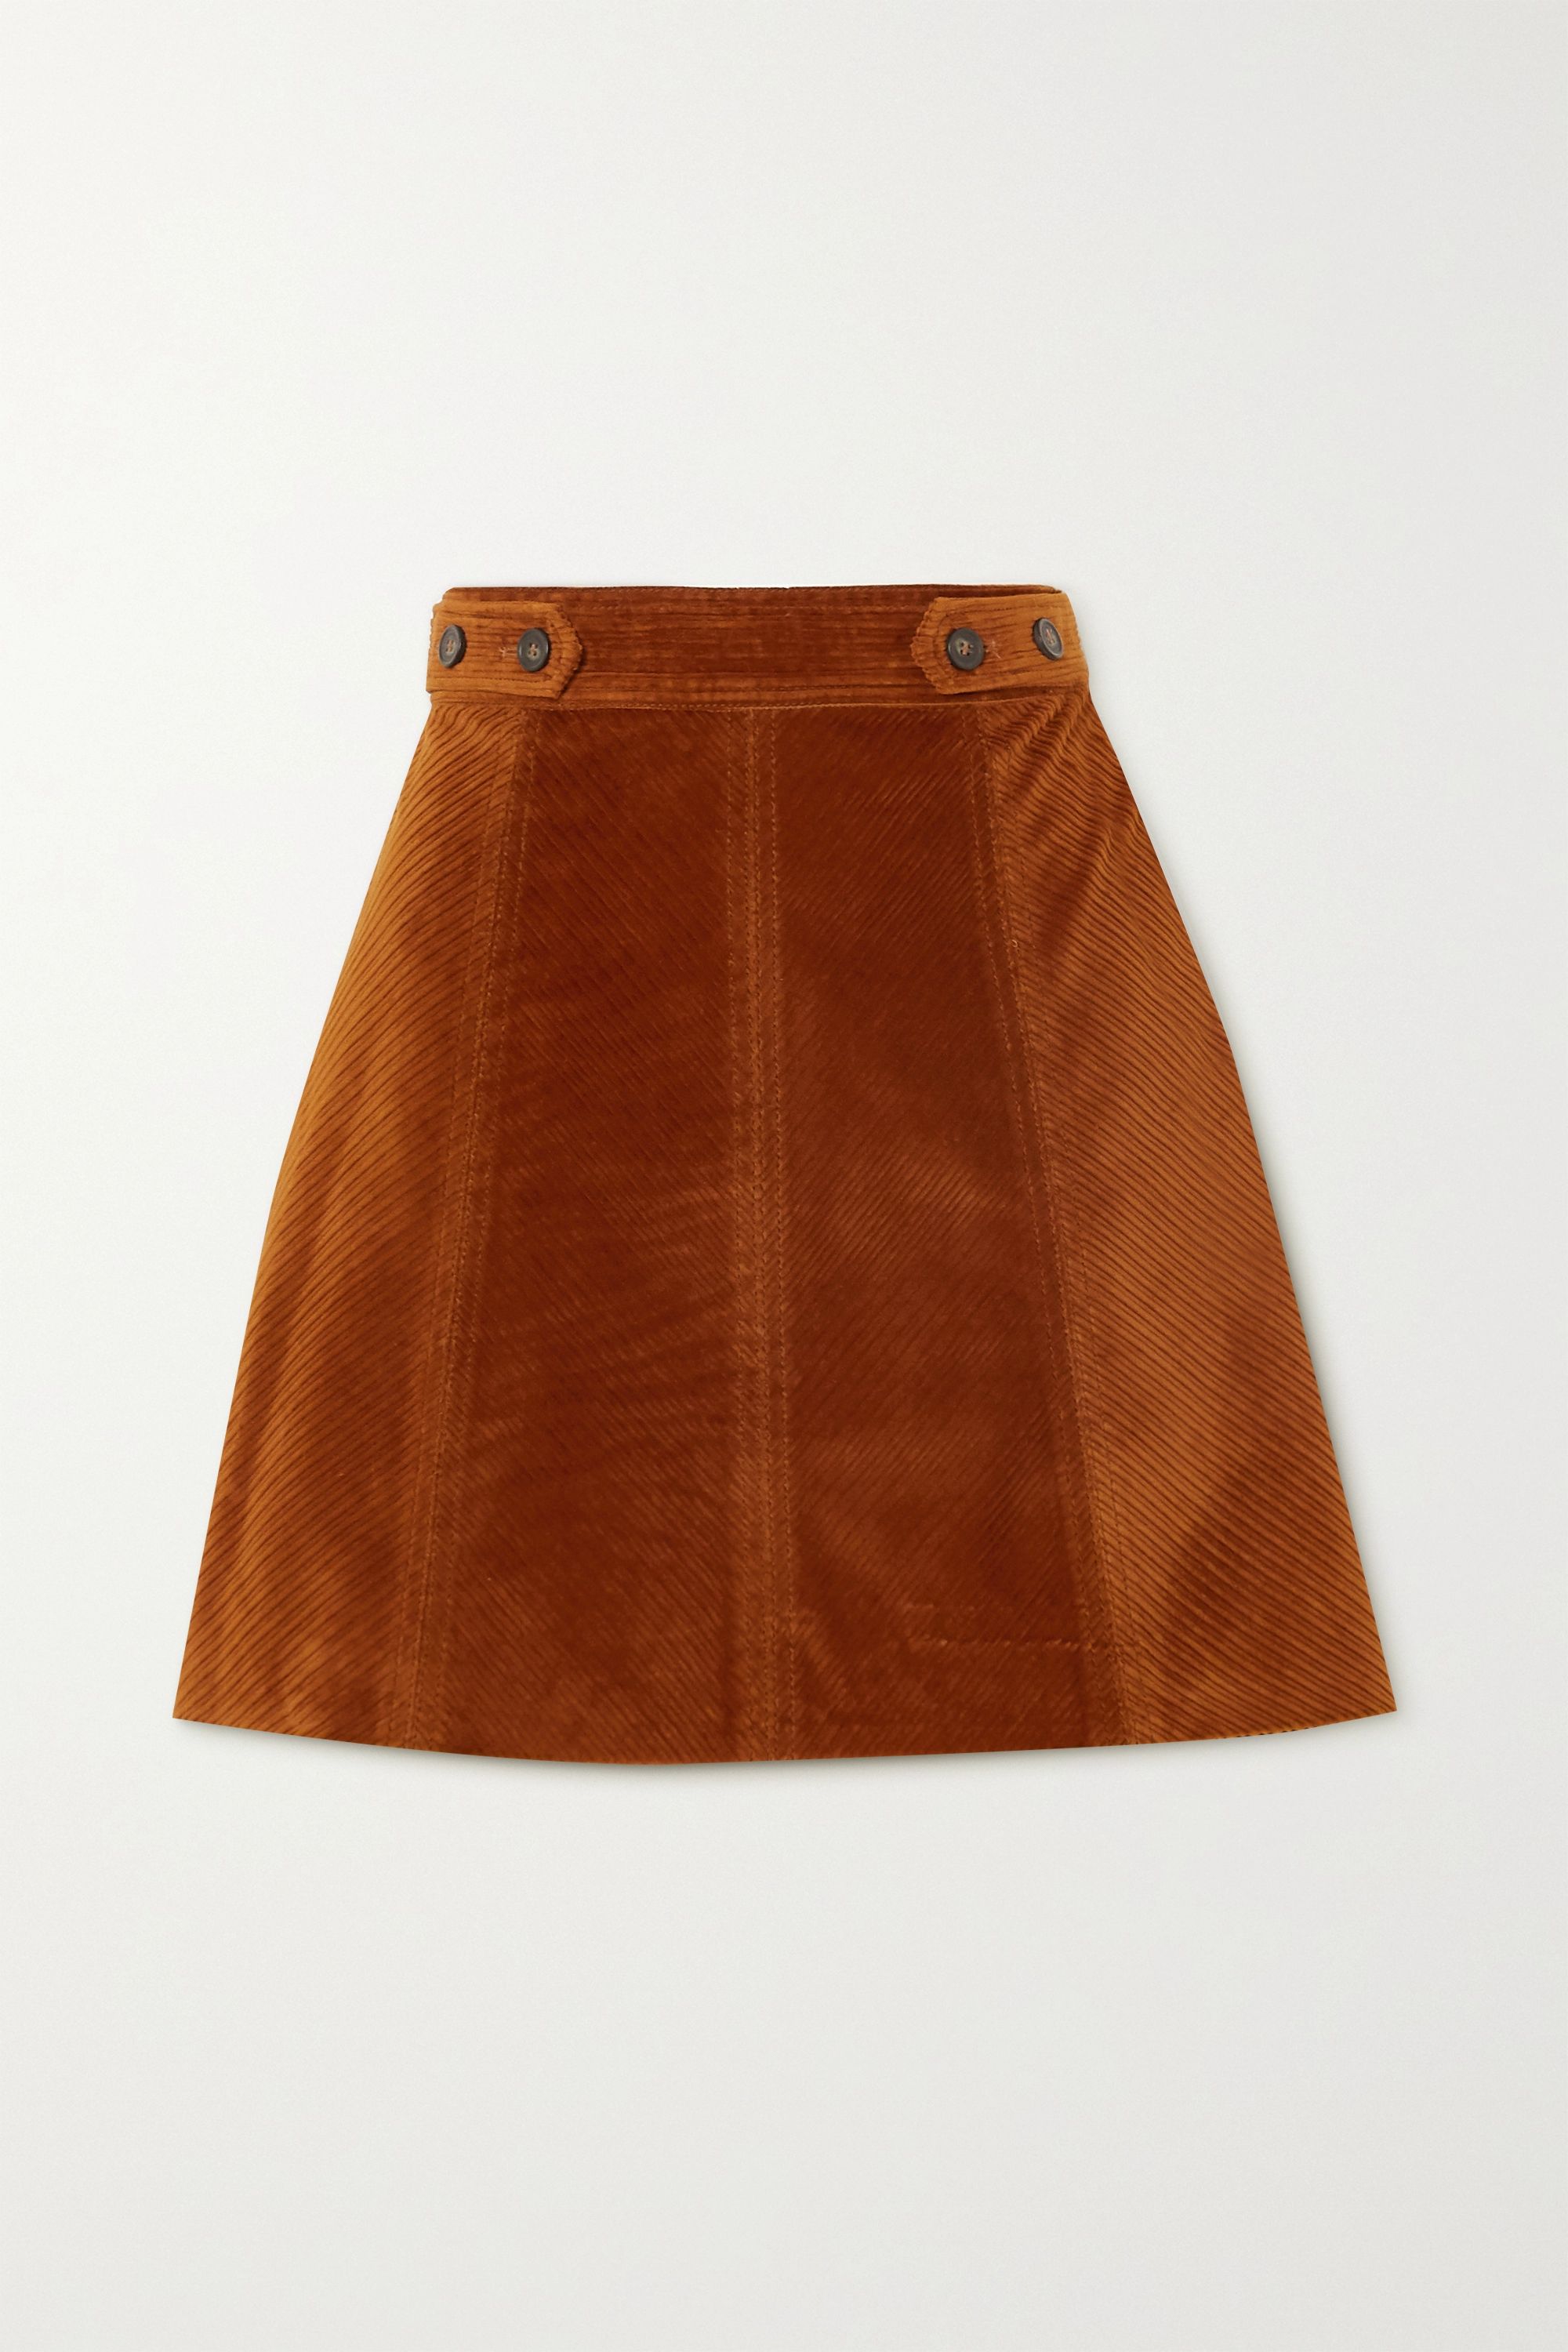 Vanessa Bruno + Panpi Cotton Blend Corduroy Mini Skirt